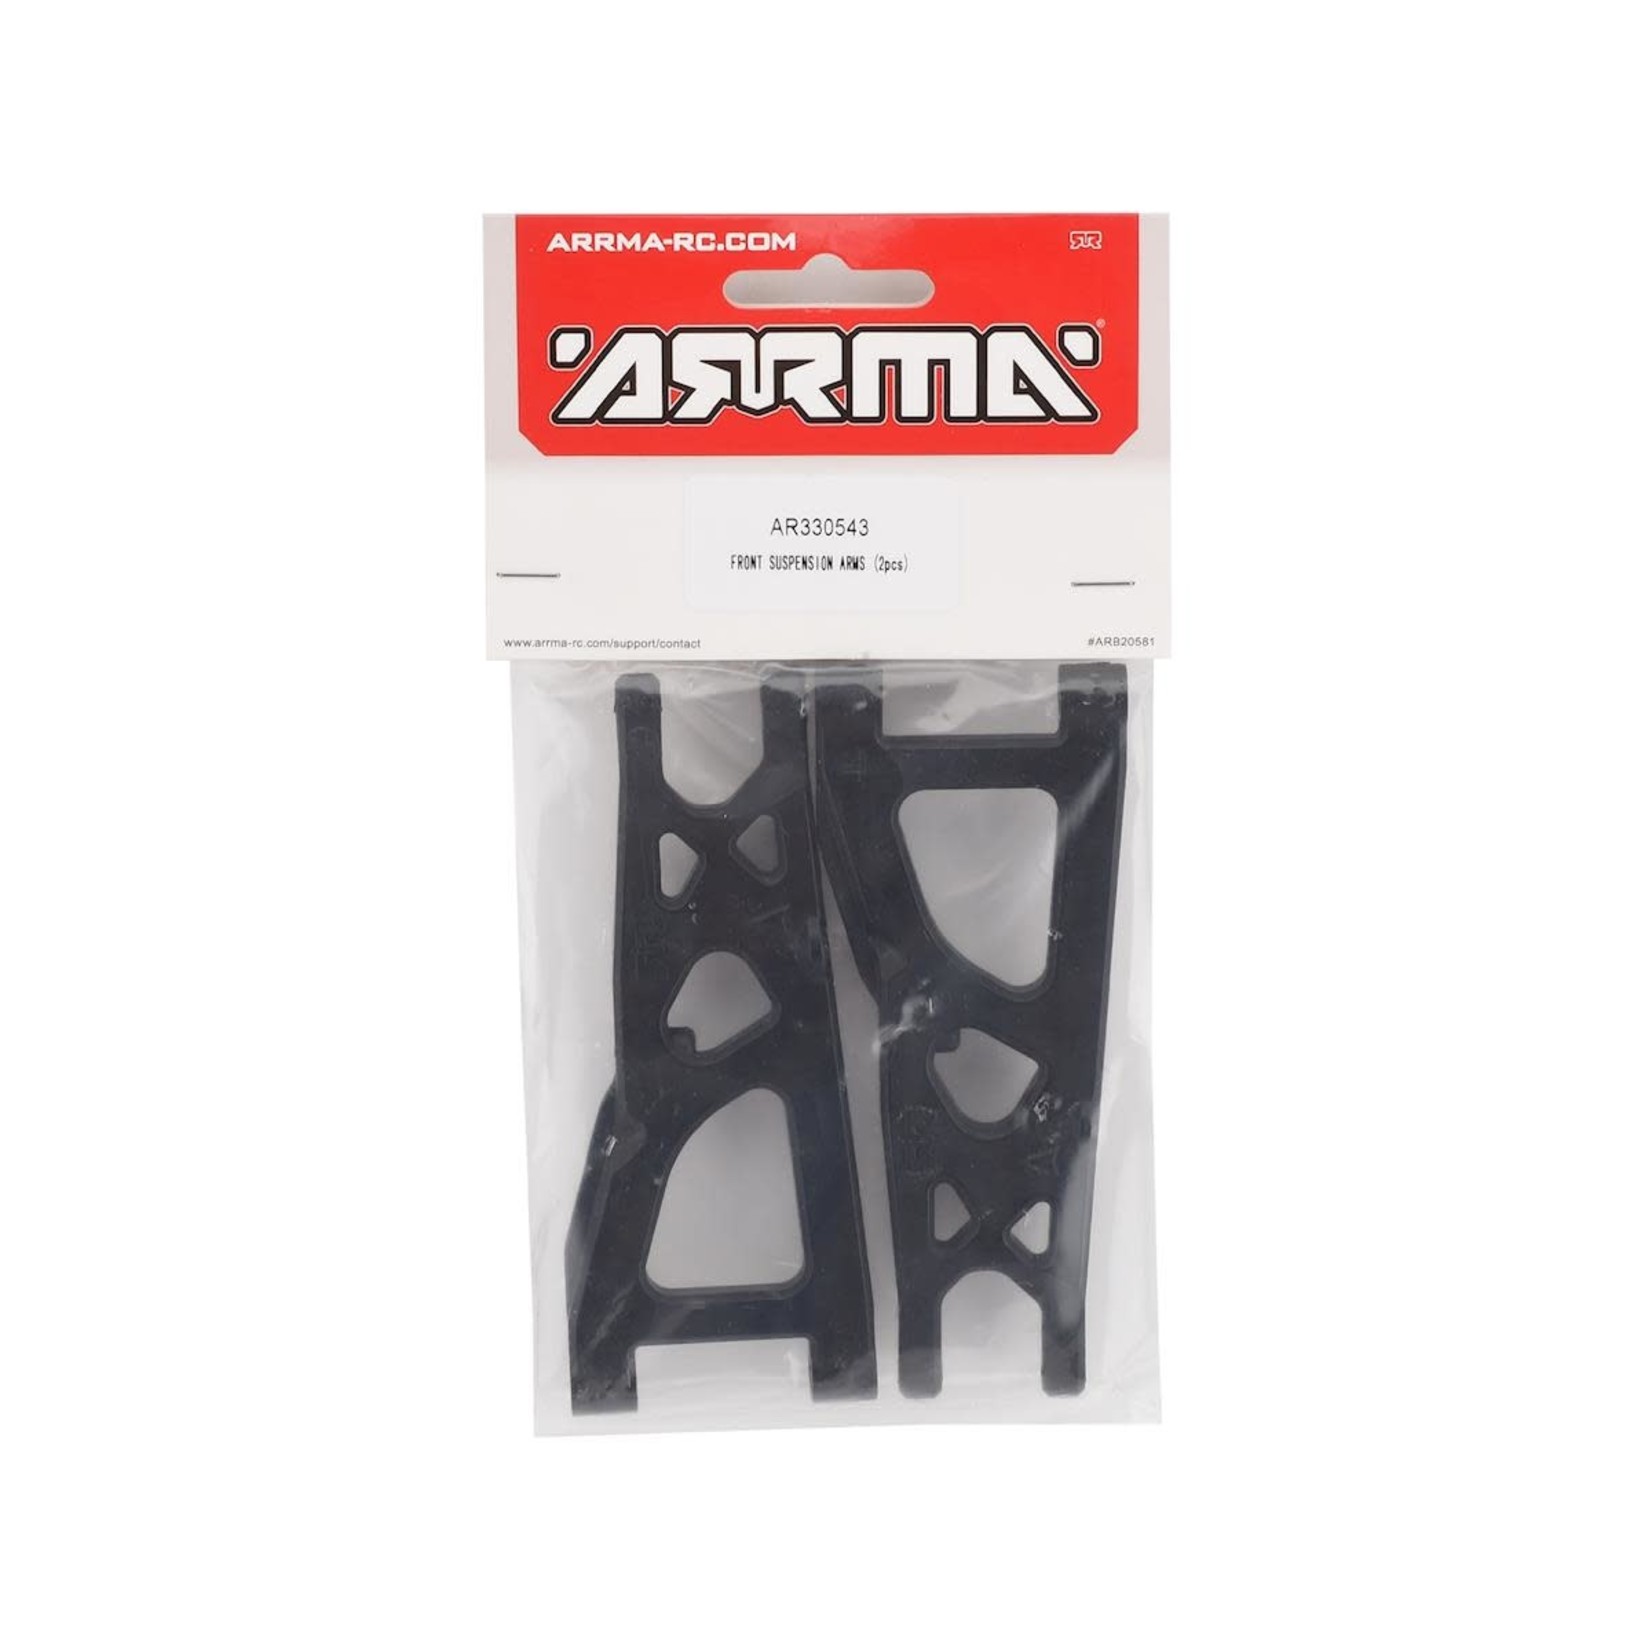 ARRMA Arrma 3S BLX Front Suspension Arm Set (2) #AR330543